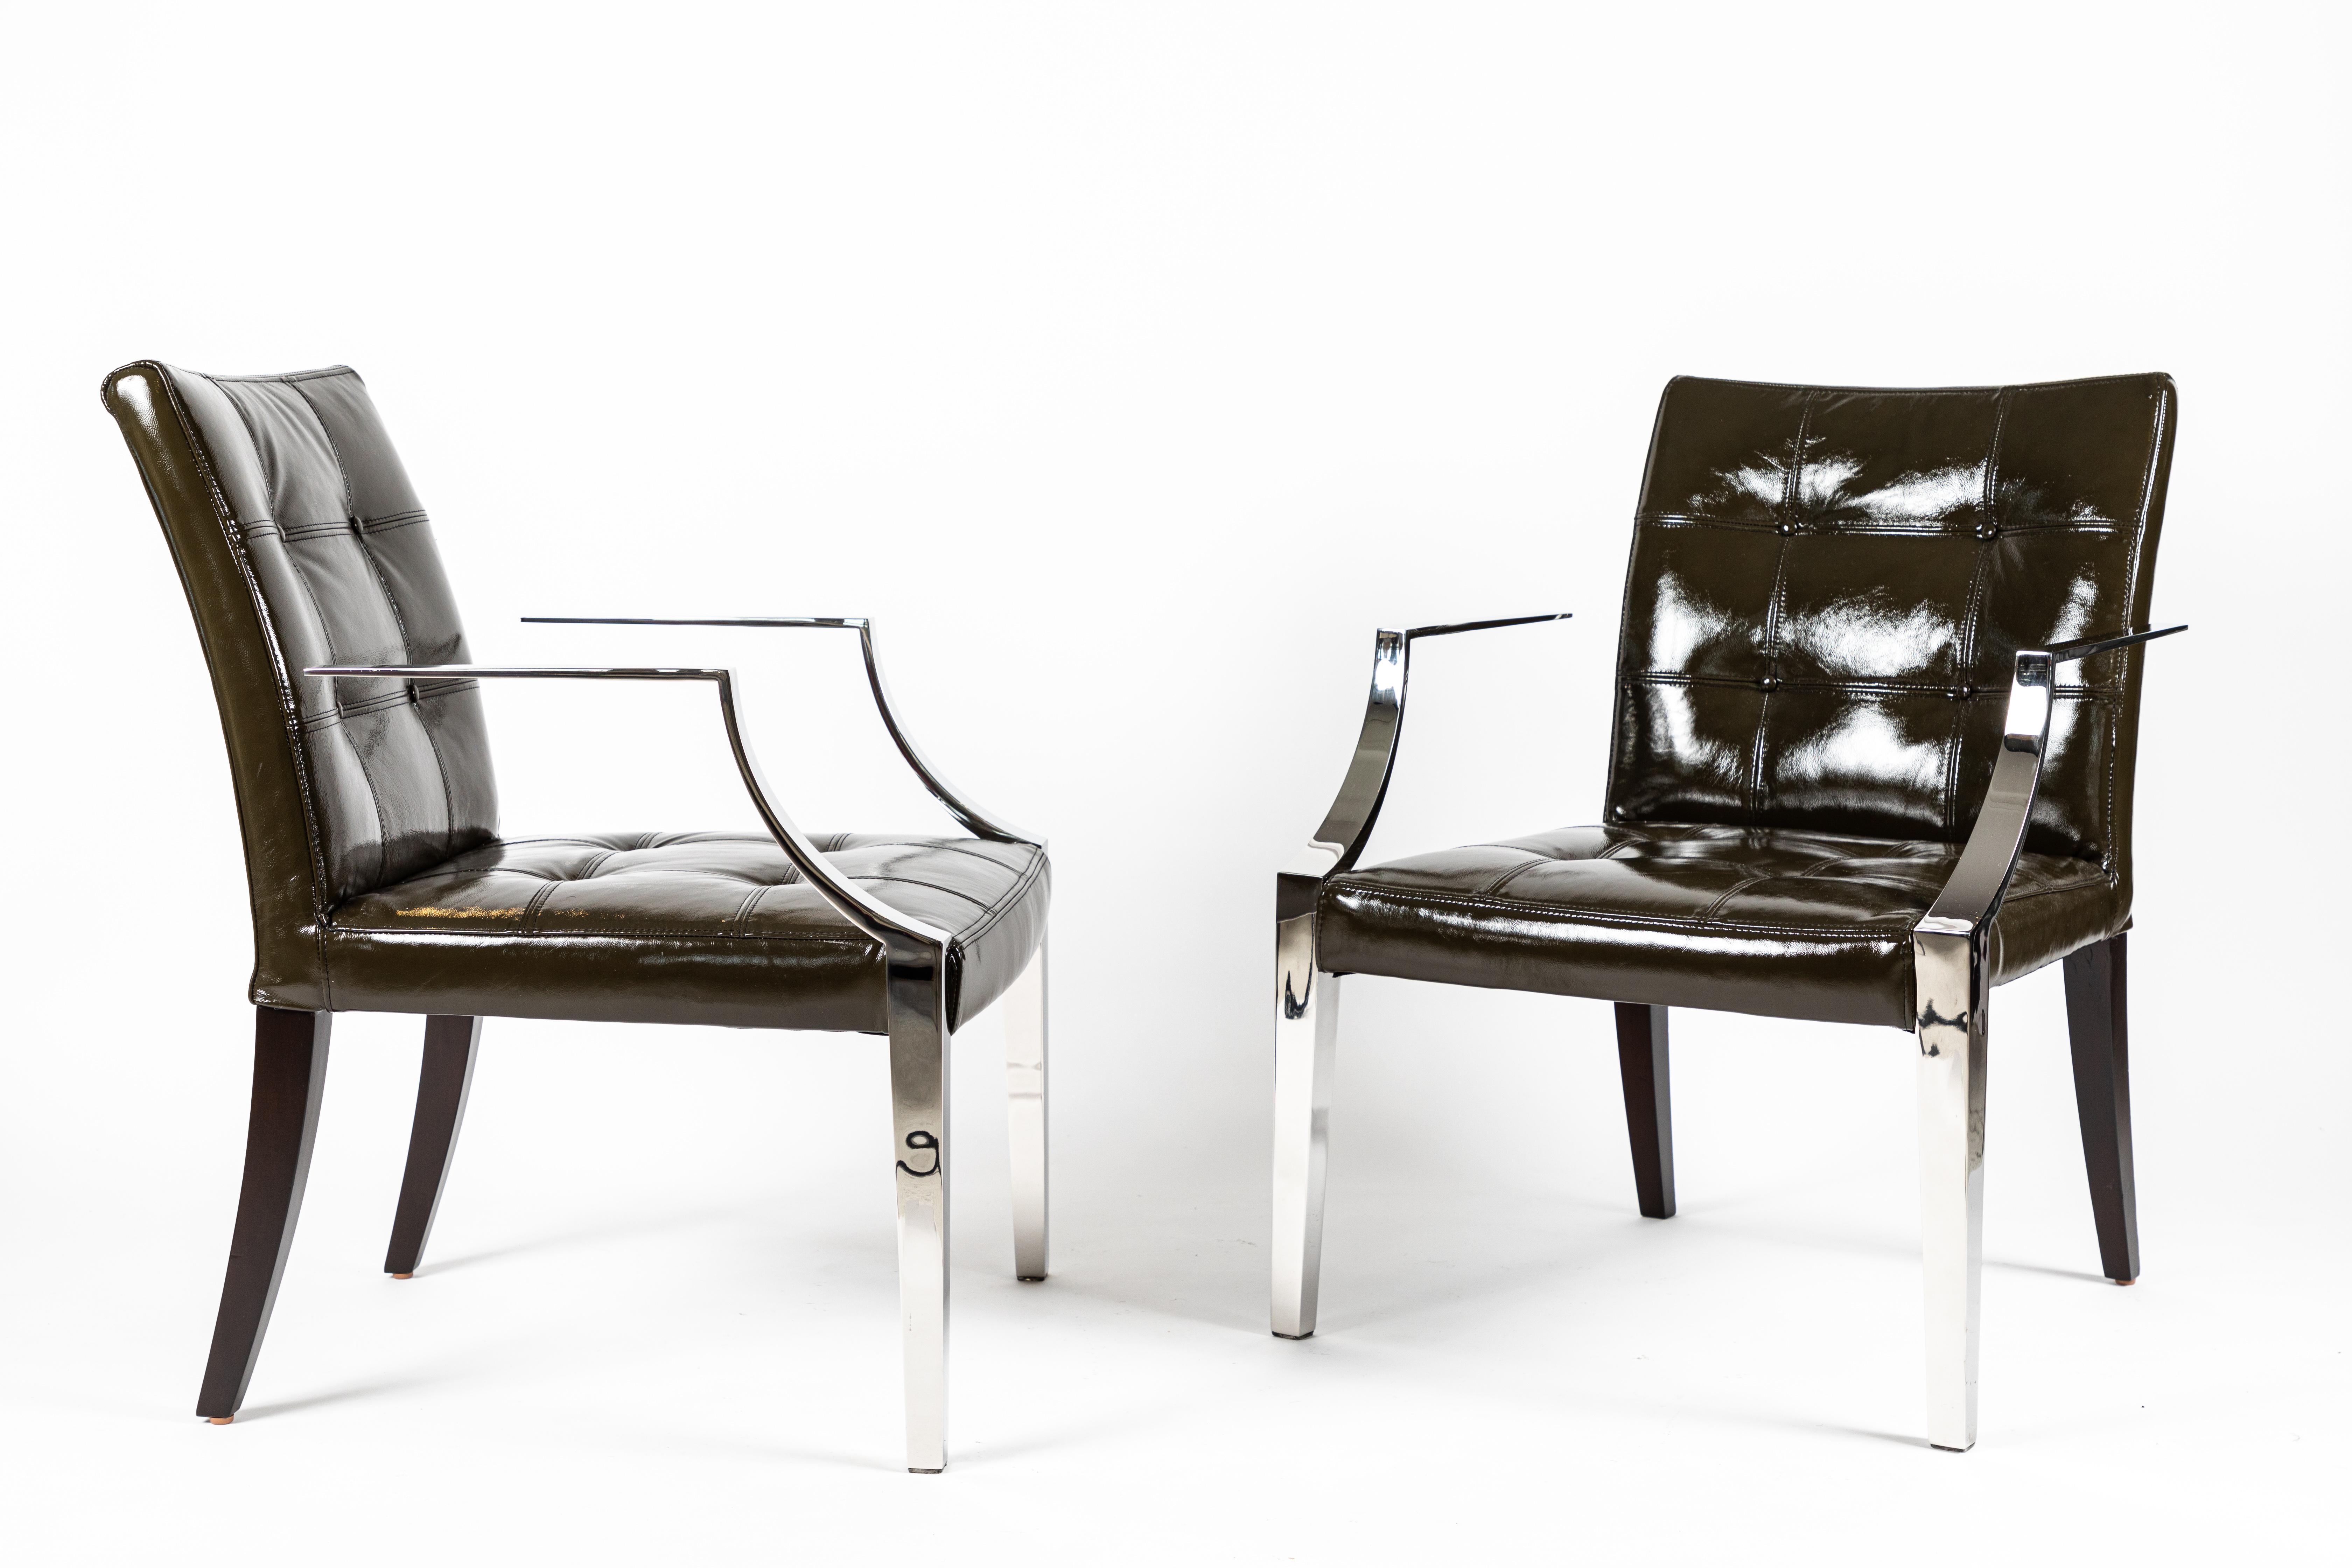 Une paire chic de chaises Monseigneur par le maître du 20ème siècle Philippe Starck. Acquis auprès de l'hôtel SLS de Beverly Hille après une importante rénovation. Ces chaises ont été récemment revêtues d'un cuir verni vert olive foncé et les